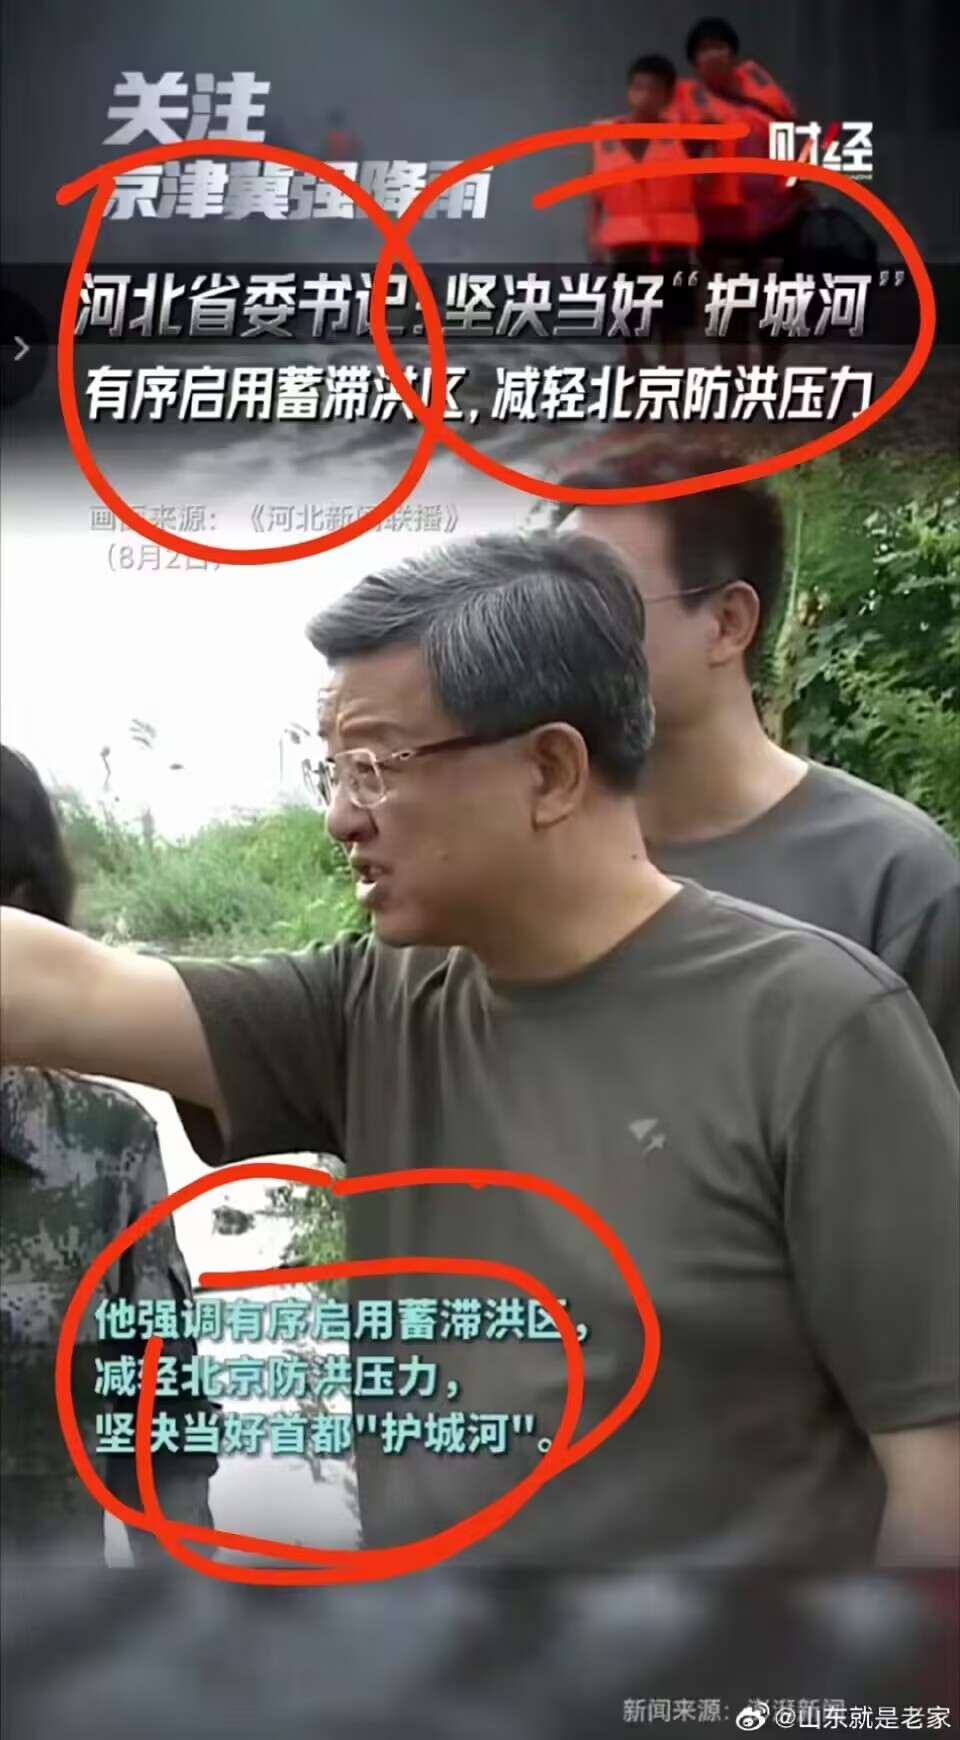 河北省委书记，调有序启用蓄滞洪区，减轻北京防洪压力。坚决当好首都“护城河